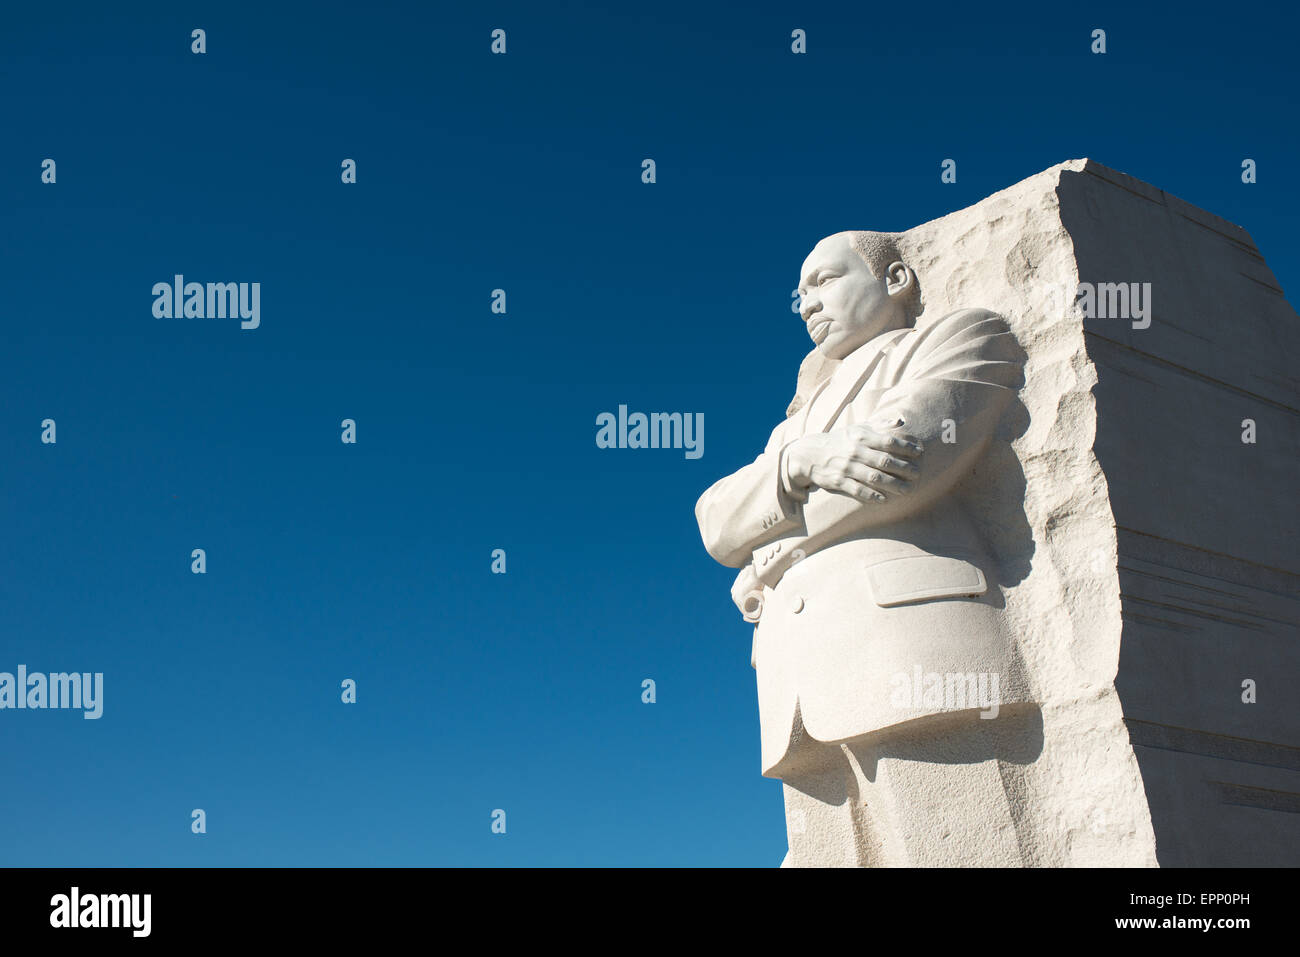 WASHINGTON DC, USA - Die zentrale Statue im Herzen der Gedenkstätte, geformt durch Lei Ellen Orth. Das im Jahr 2011 eröffnete das Martin Luther King Jr. Memorial liegt am Ufer des Tidal Basin in Washington DC und erinnert an die civil rights Leader. Stockfoto